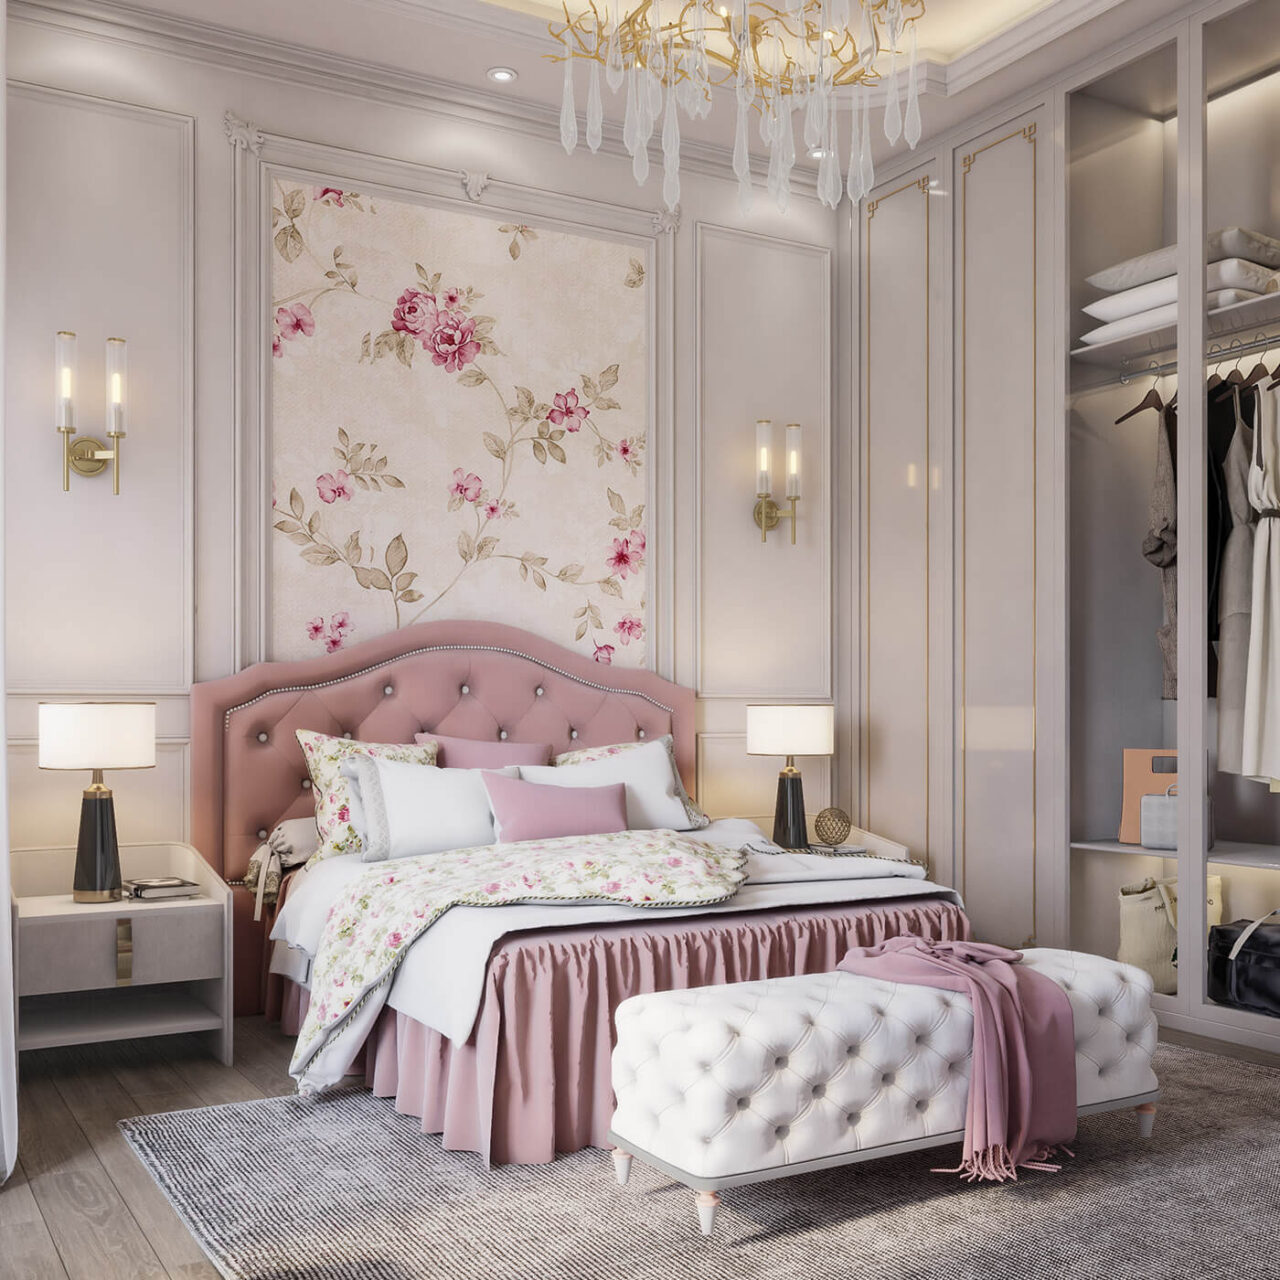 Thiết kế phòng ngủ nhỏ phong cách thiết kế tân cổ điển chính là sự giao thoa của vẻ đẹp cổ điển và hiện đại